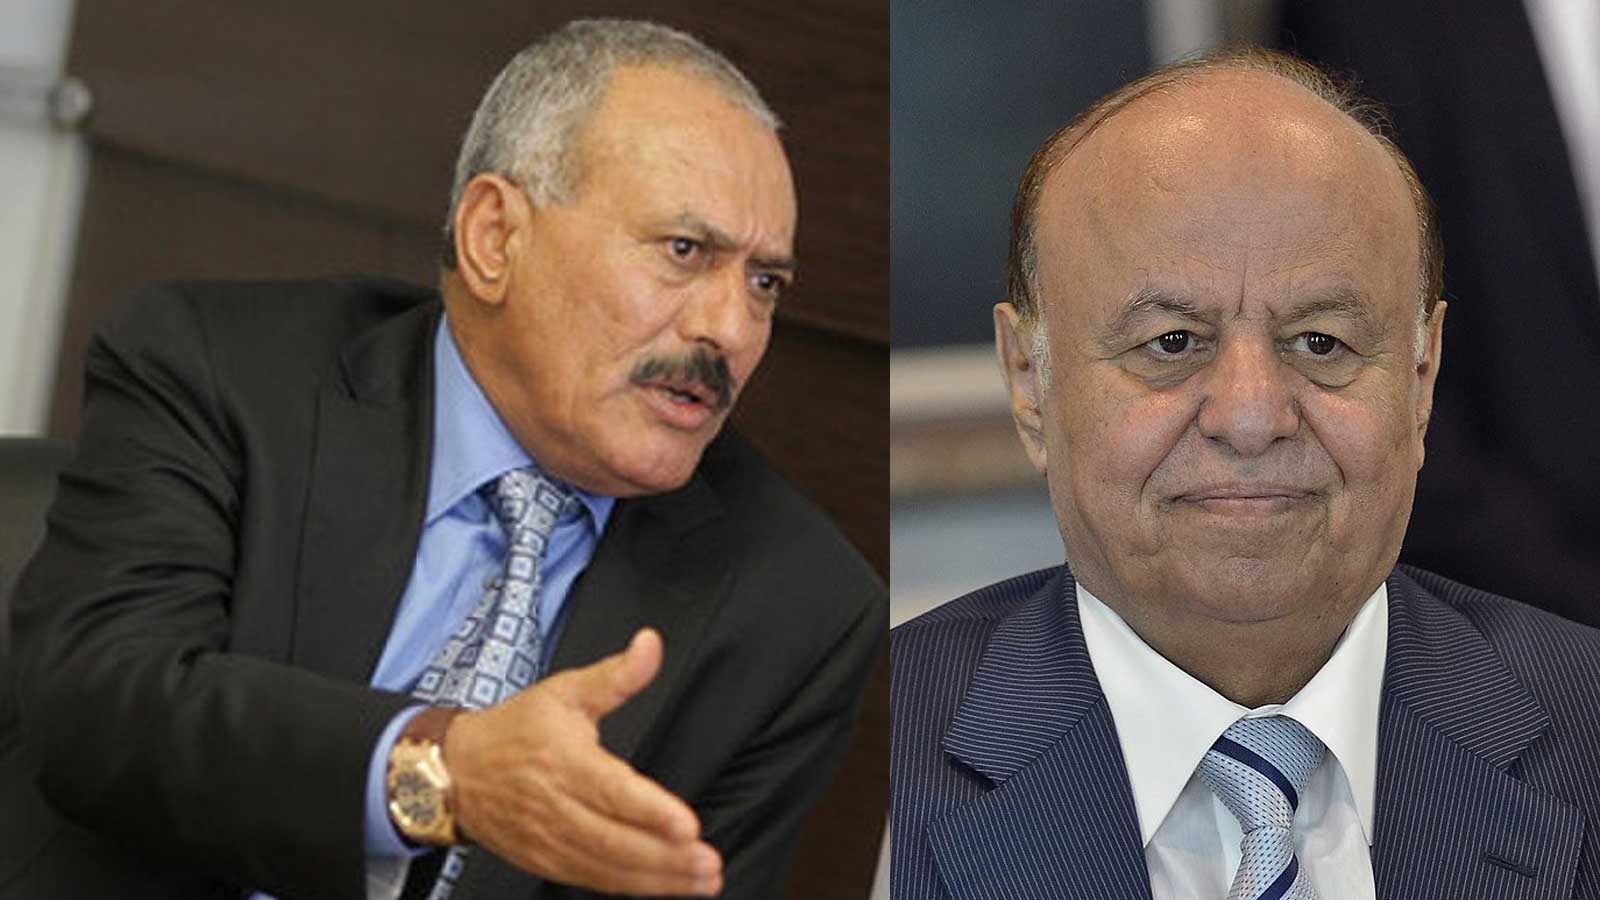 El presidente internacionalmente reconocido de Yemen, Abd Rabbo Mansour Hadi (derecha), y el presidente derrocado Ali Abdullah Saleh. Foto: U.S Defense Department.